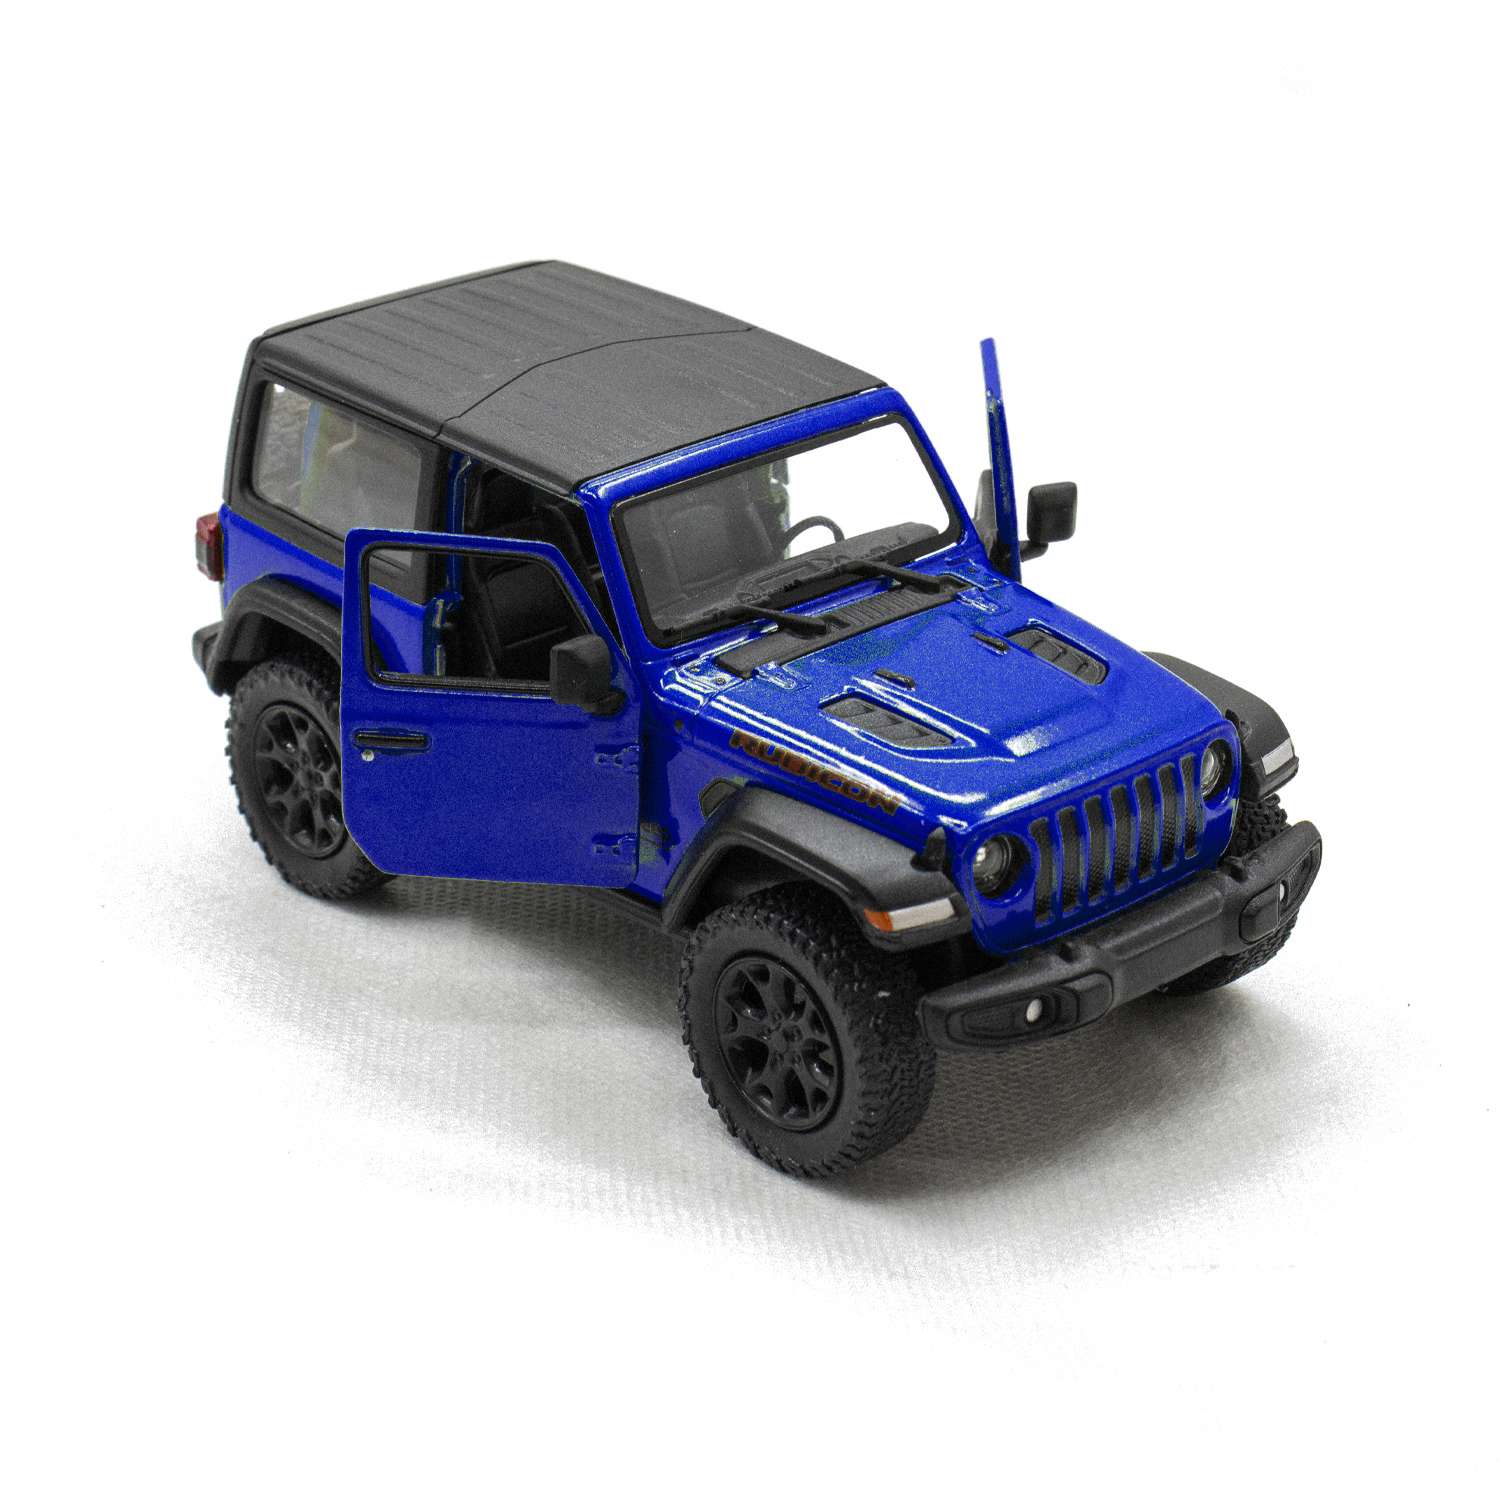 Модель автомобиля KINSMART Вранглер синий АМ008 - фото 2